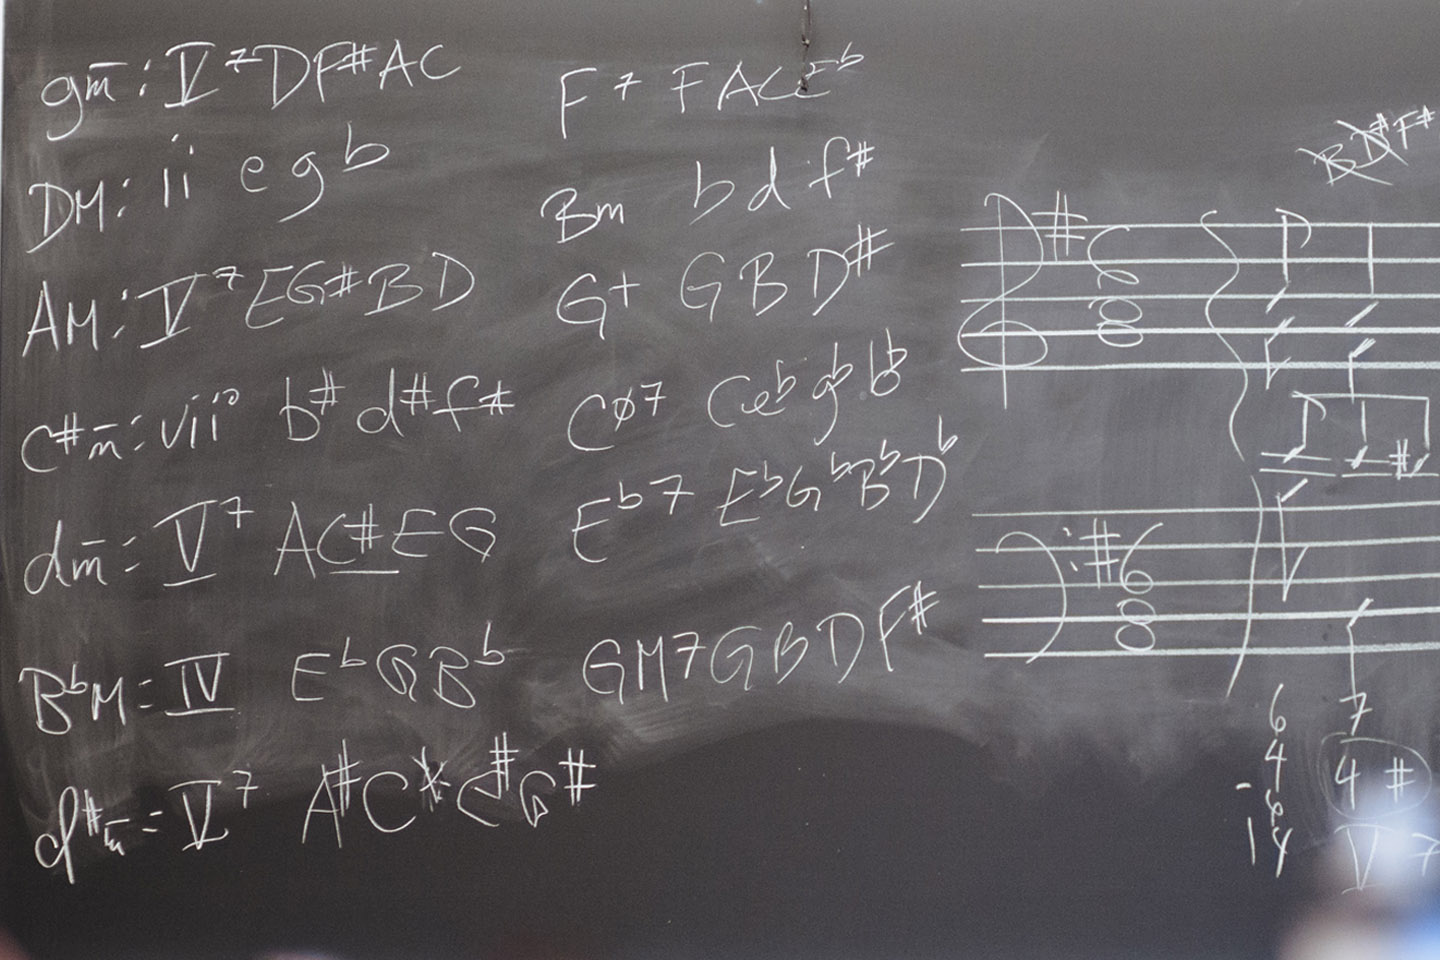 Chord spellings written on a chalkboard